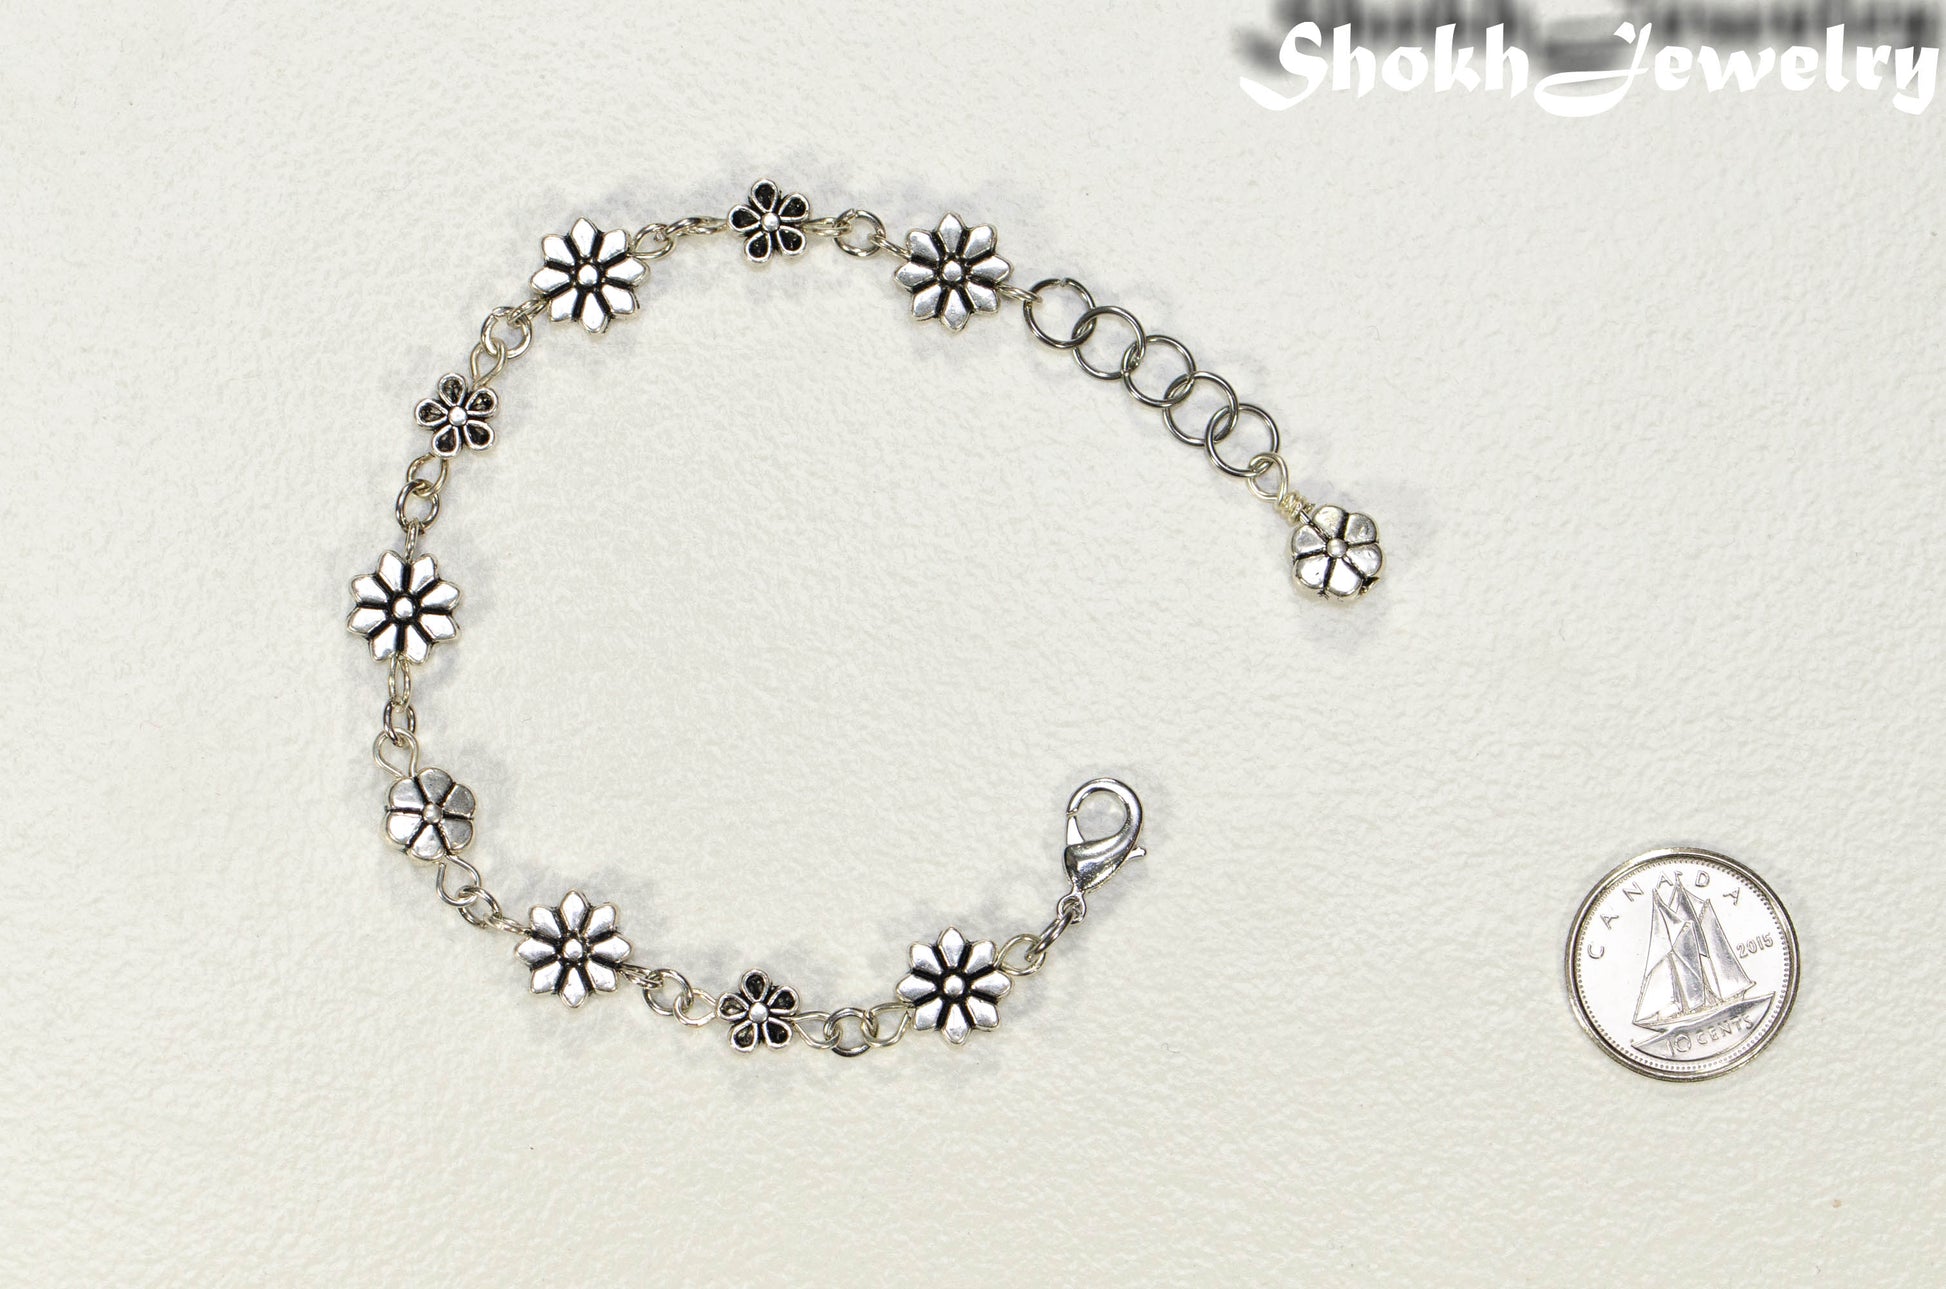 Tibetan silver Flower Bracelet beside a dime.